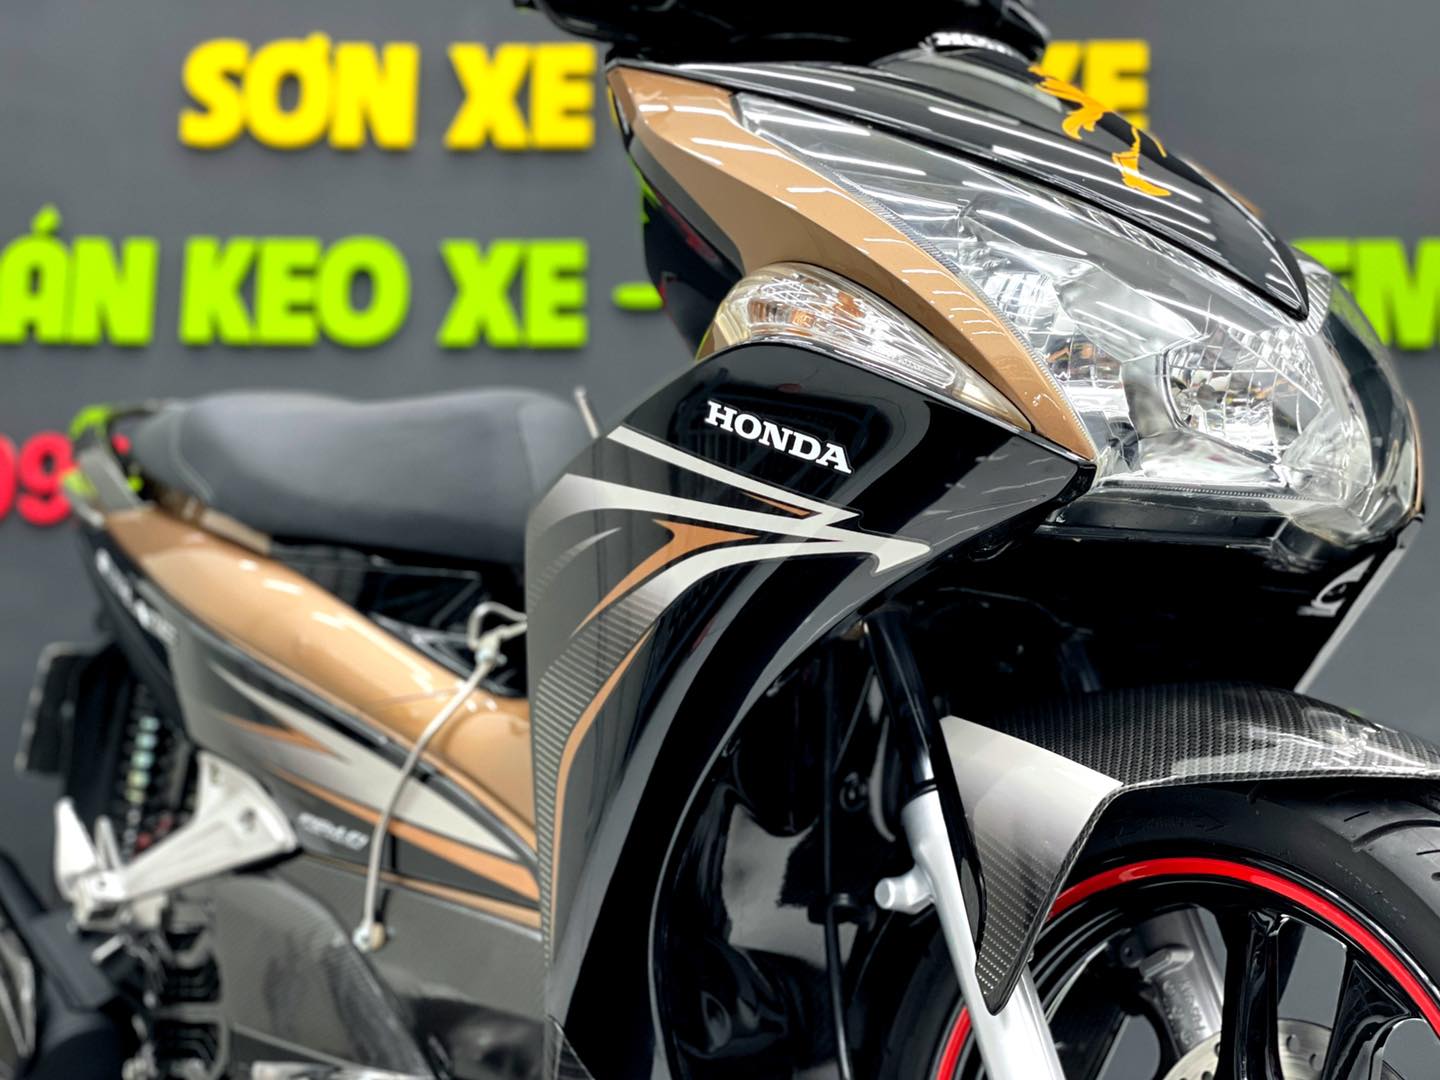 Bảng giá sơn xe máy Honda Airblade 2012 đầu bò  SƠN XE SÀI GÒN